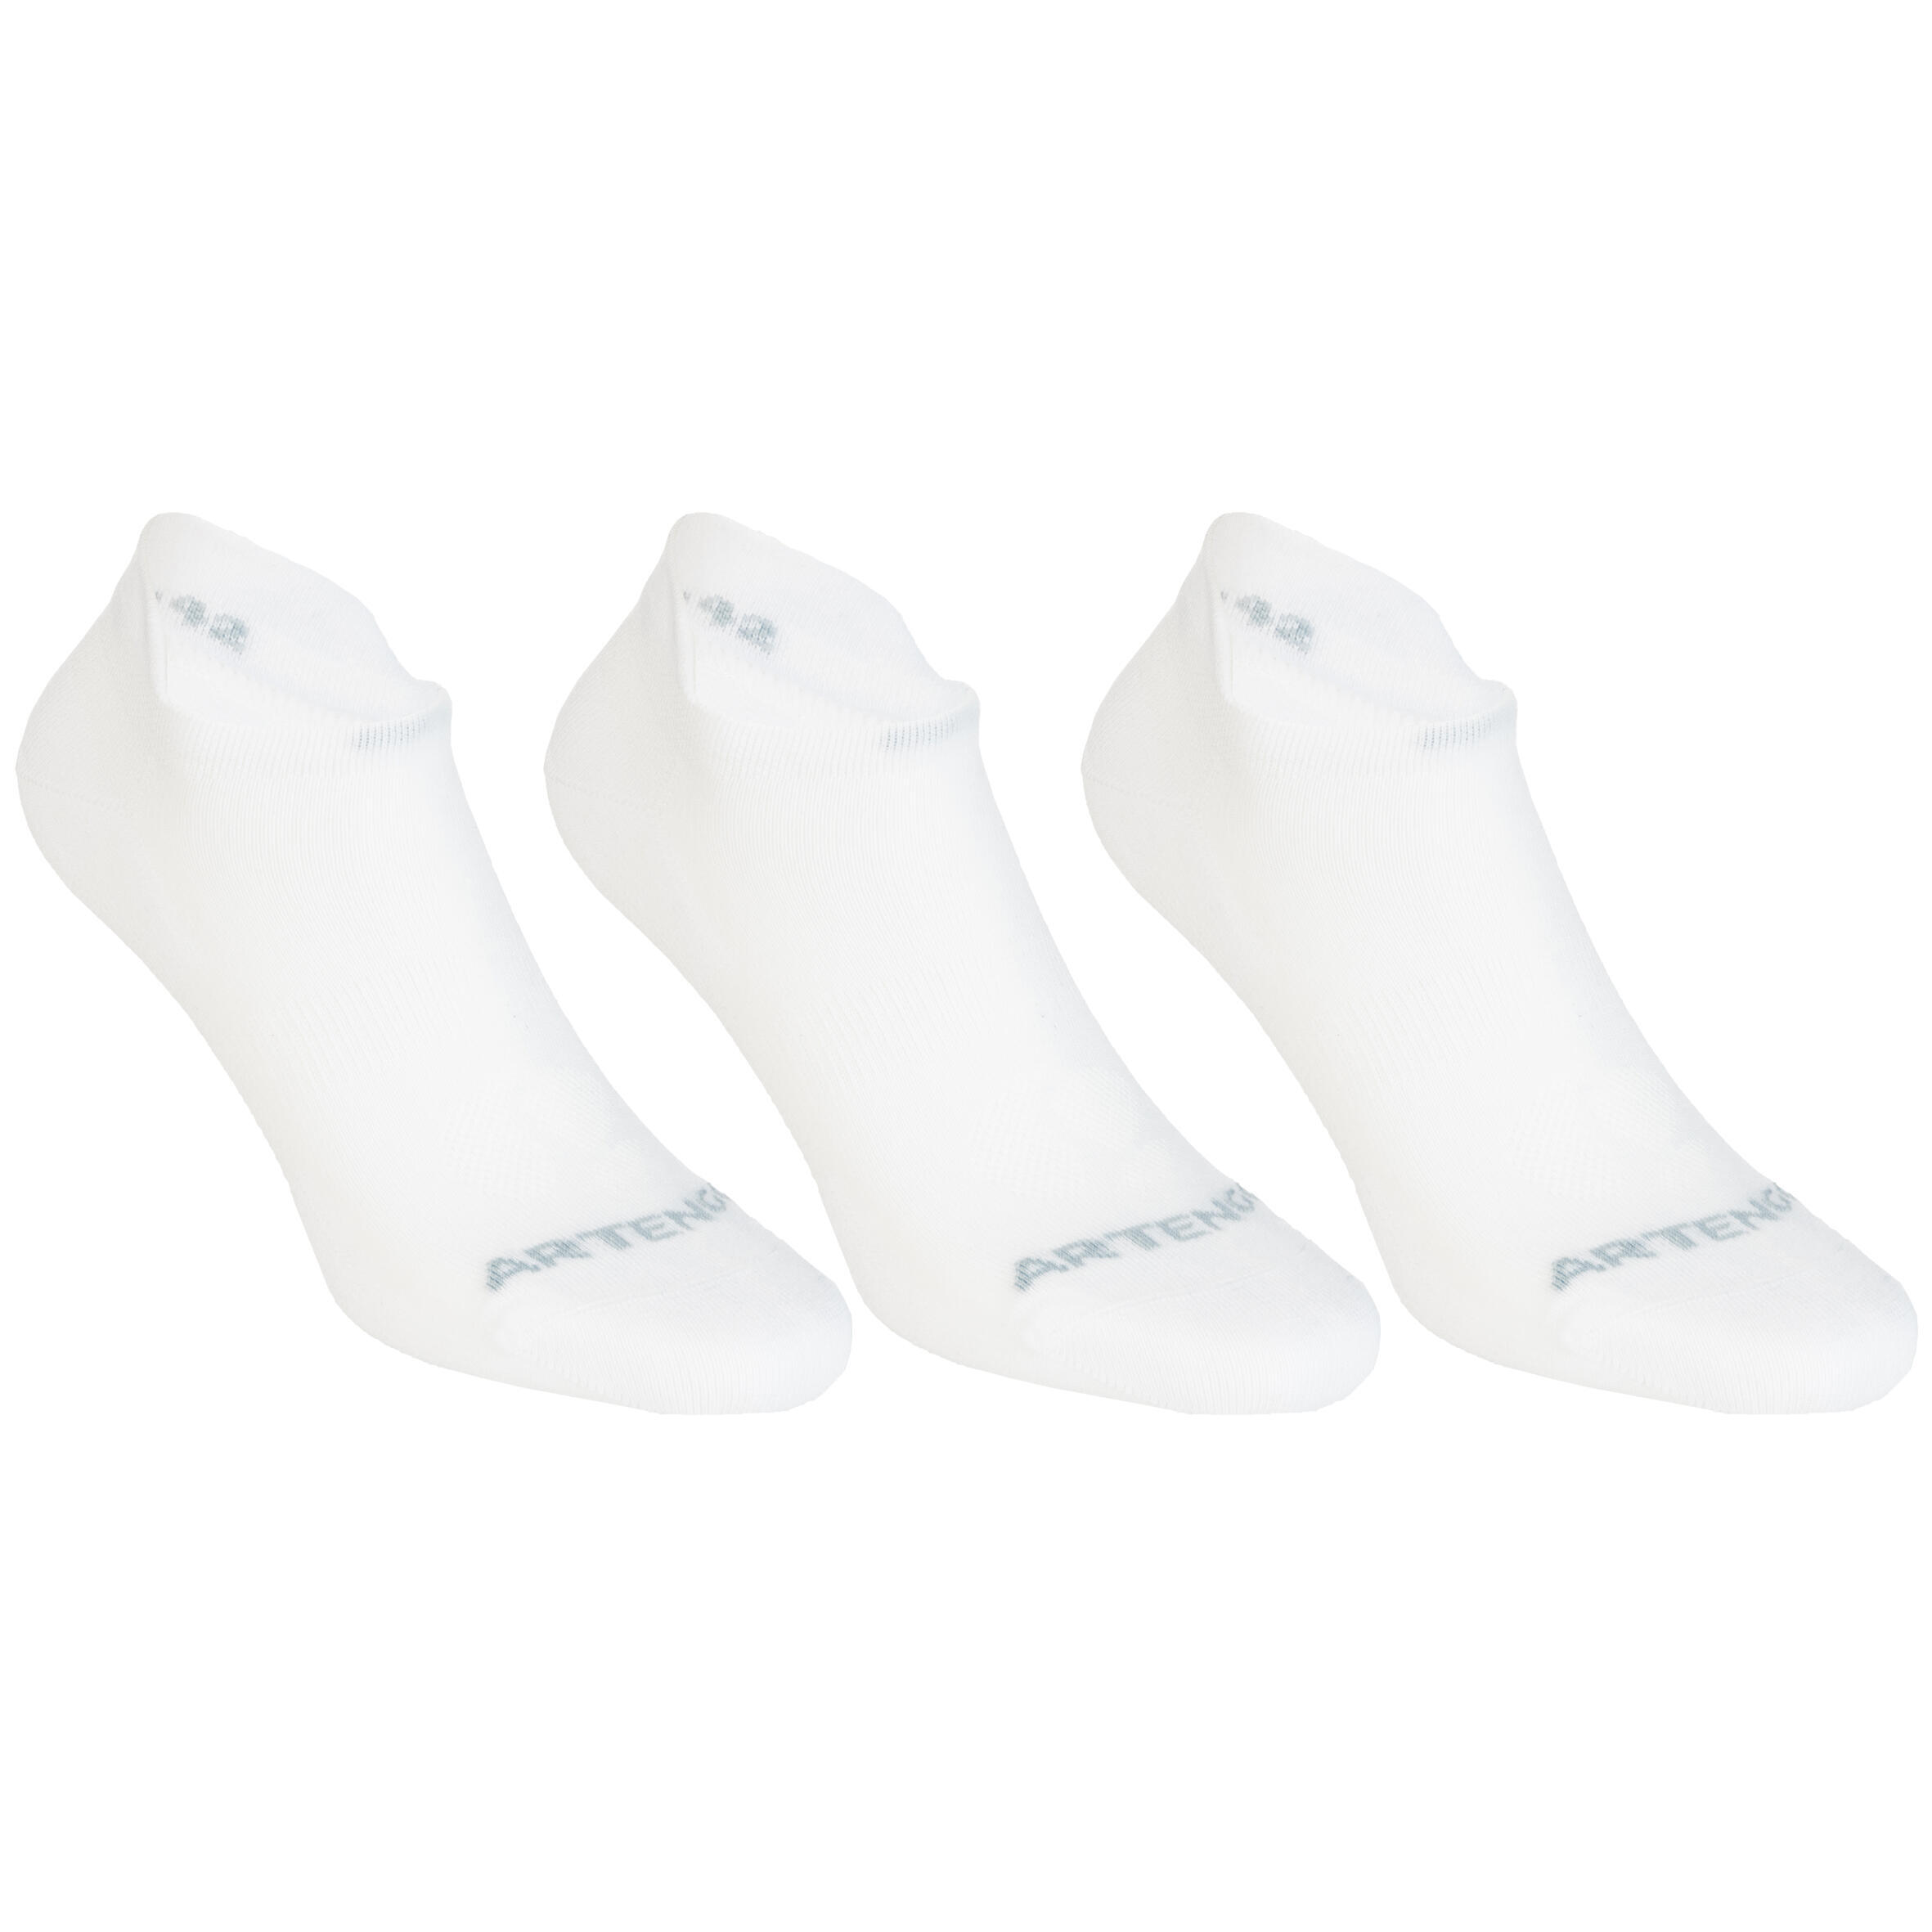 Теннисные носки - RS 160 Low, 3 шт. в упаковке, белые ARTENGO, белый носки белые детские 3 шт в упаковке